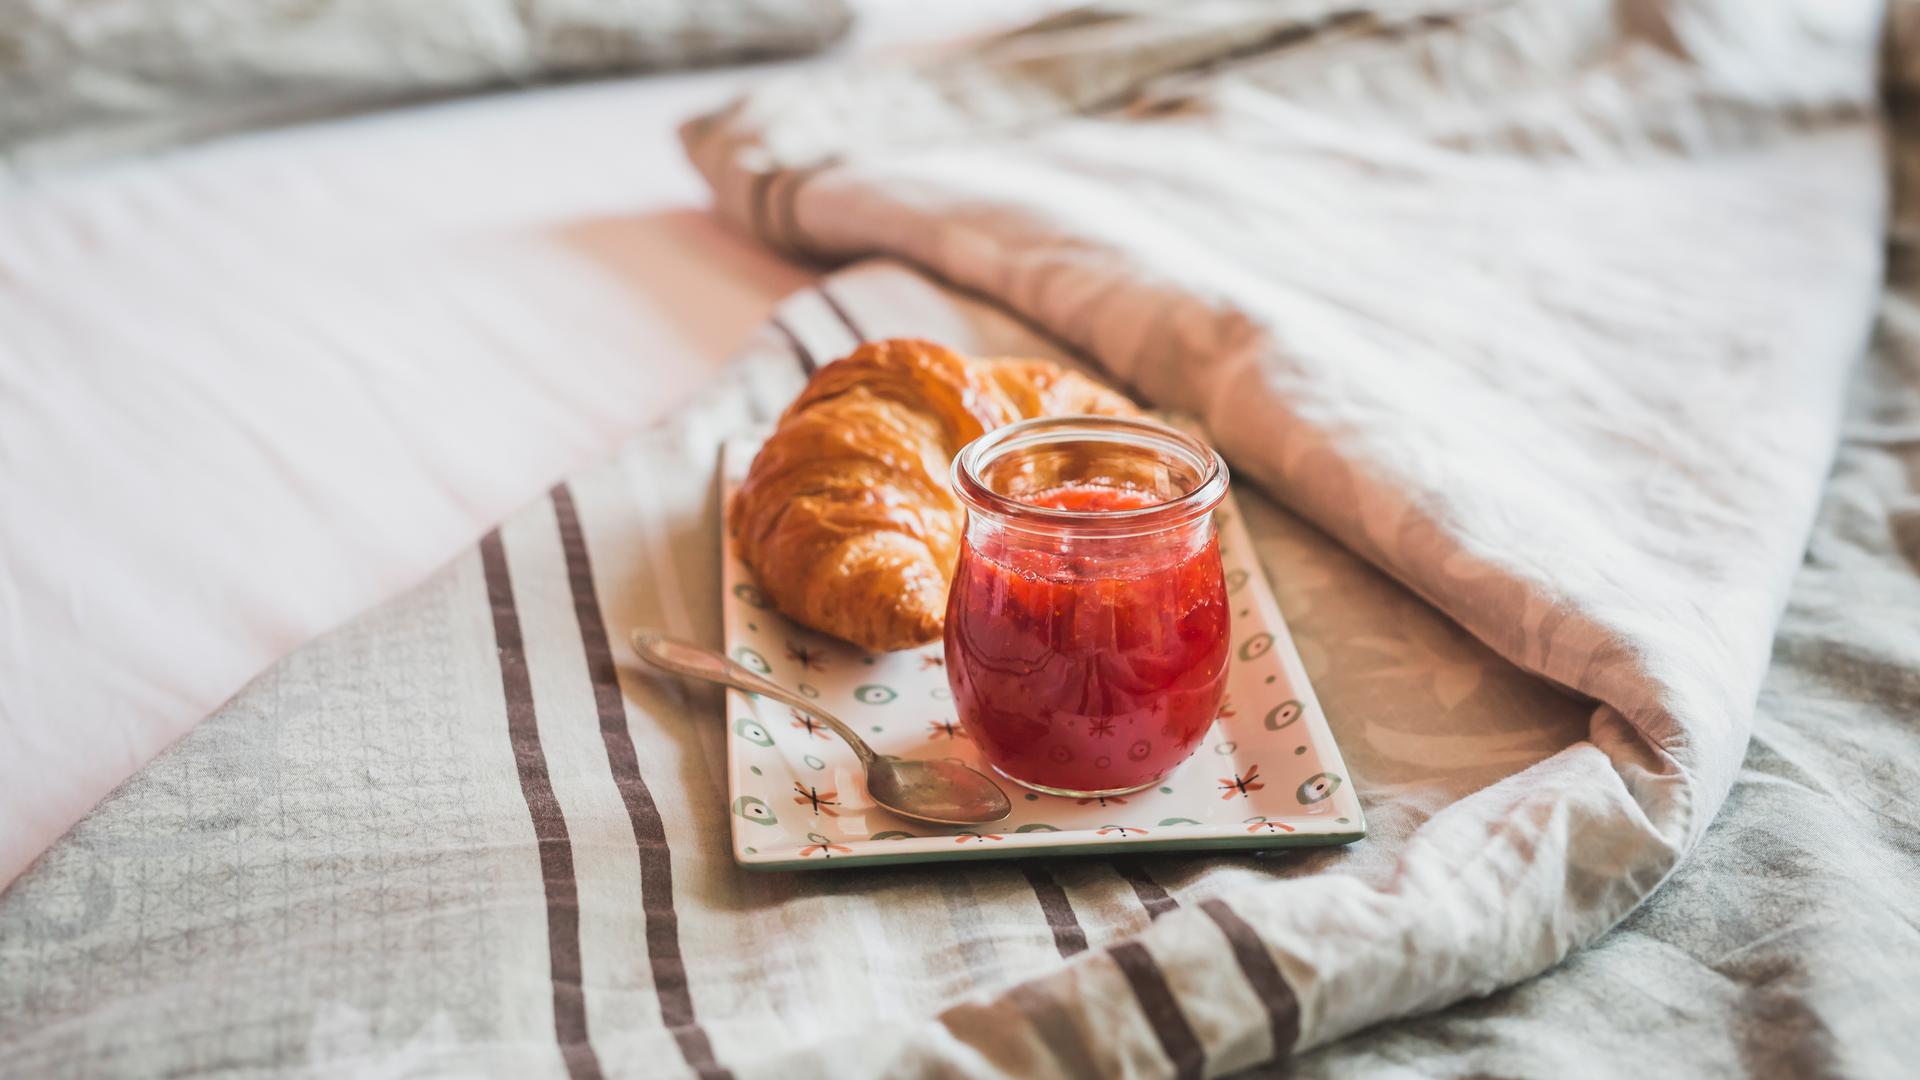 Ein Teller mit einem Croissant und Erdbeermarmelade steht auf einem Bett.